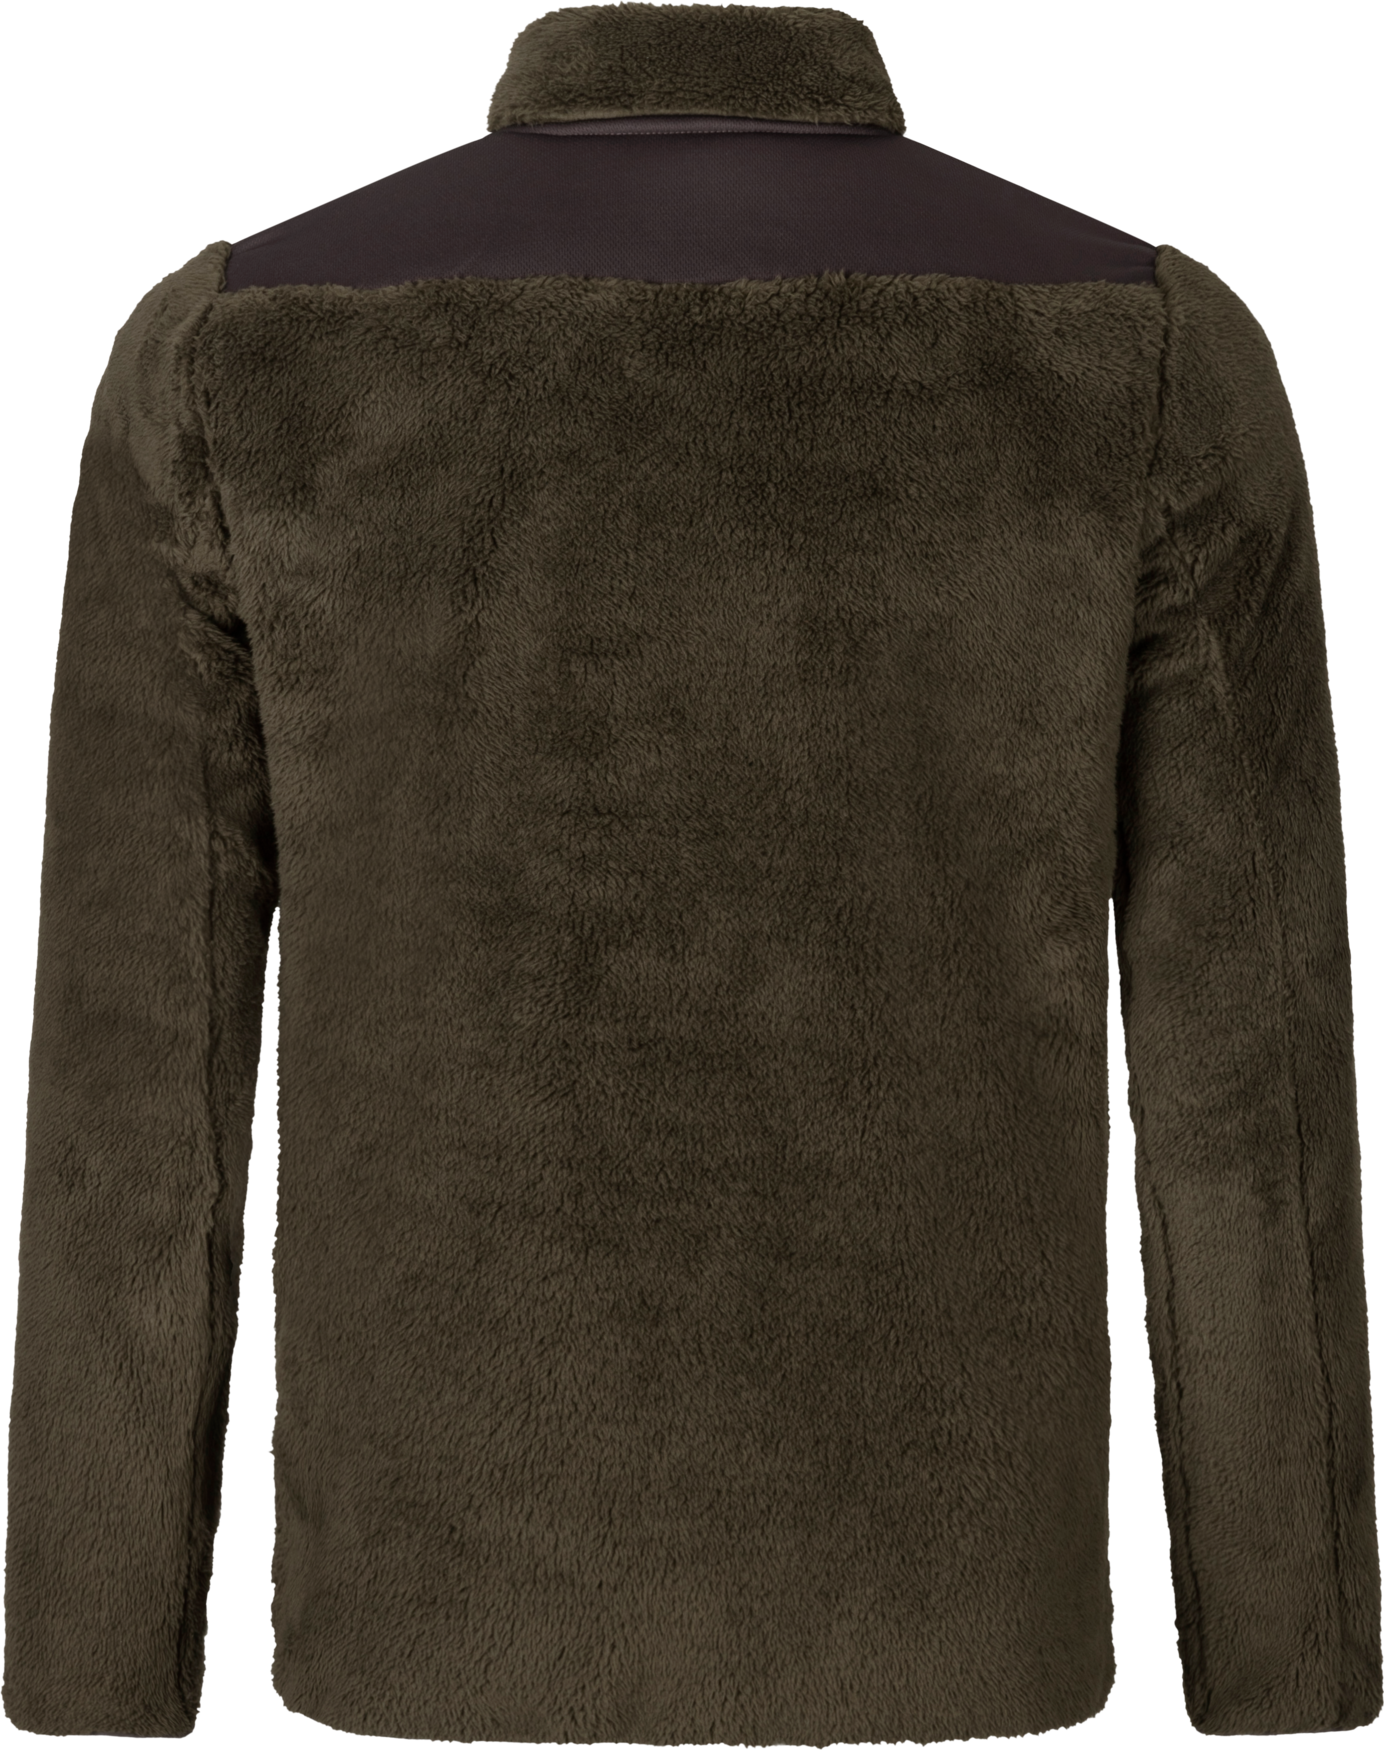 Men's Full Zip Fleece Jacket (Ladies jackets item #1424) - Realty